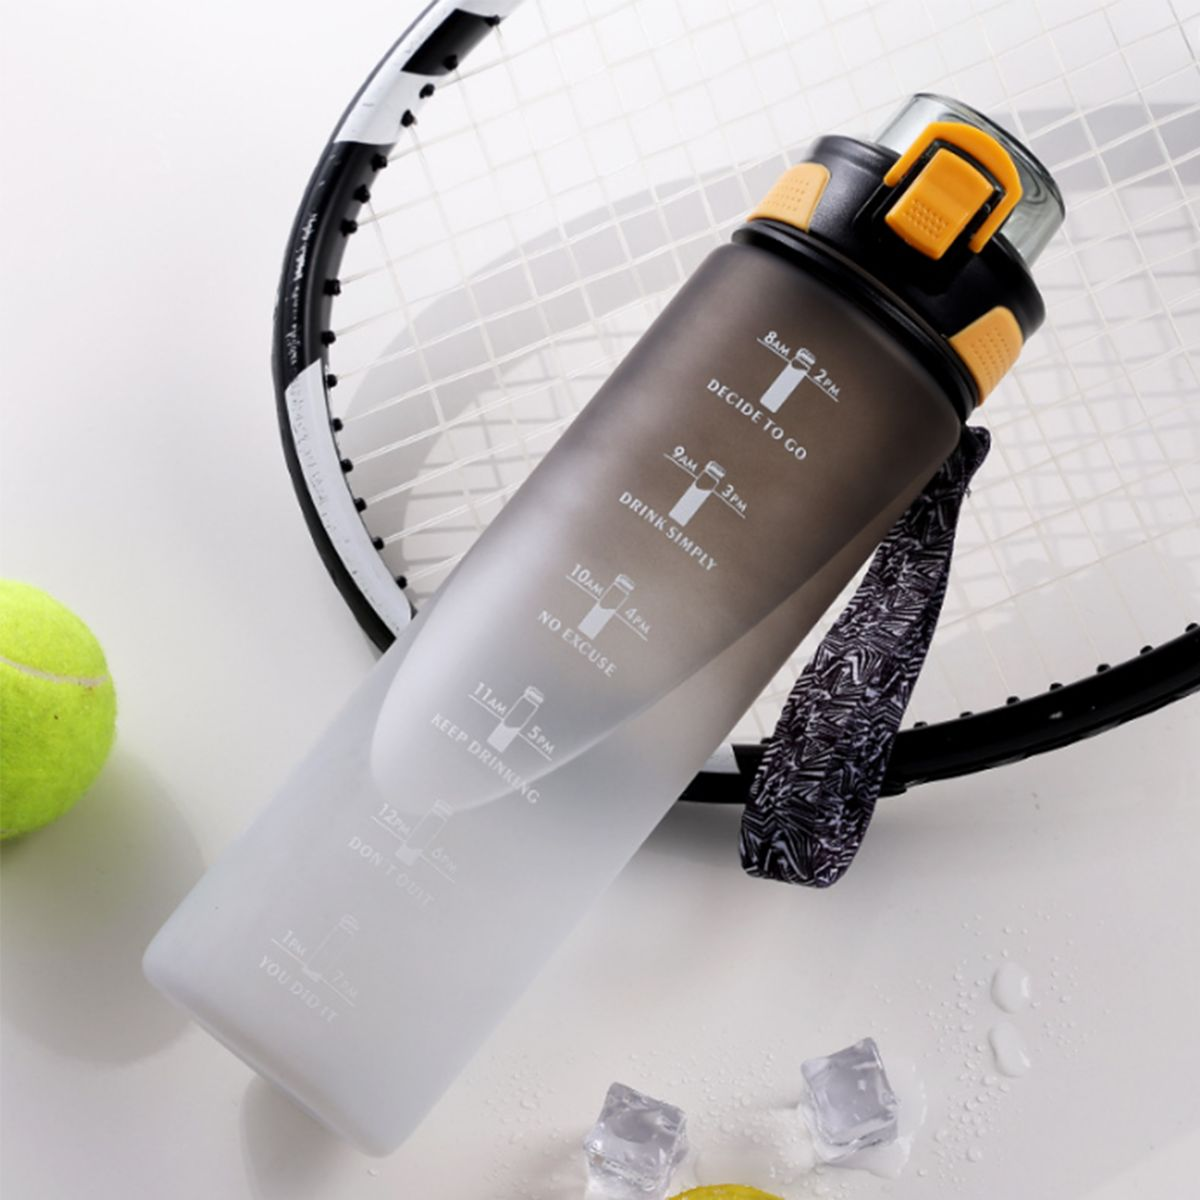 LEIGO Getränke Wasserflasche, Trinkflasche Sportbecher, Zeitskala, 800ML Wasserflasche mit